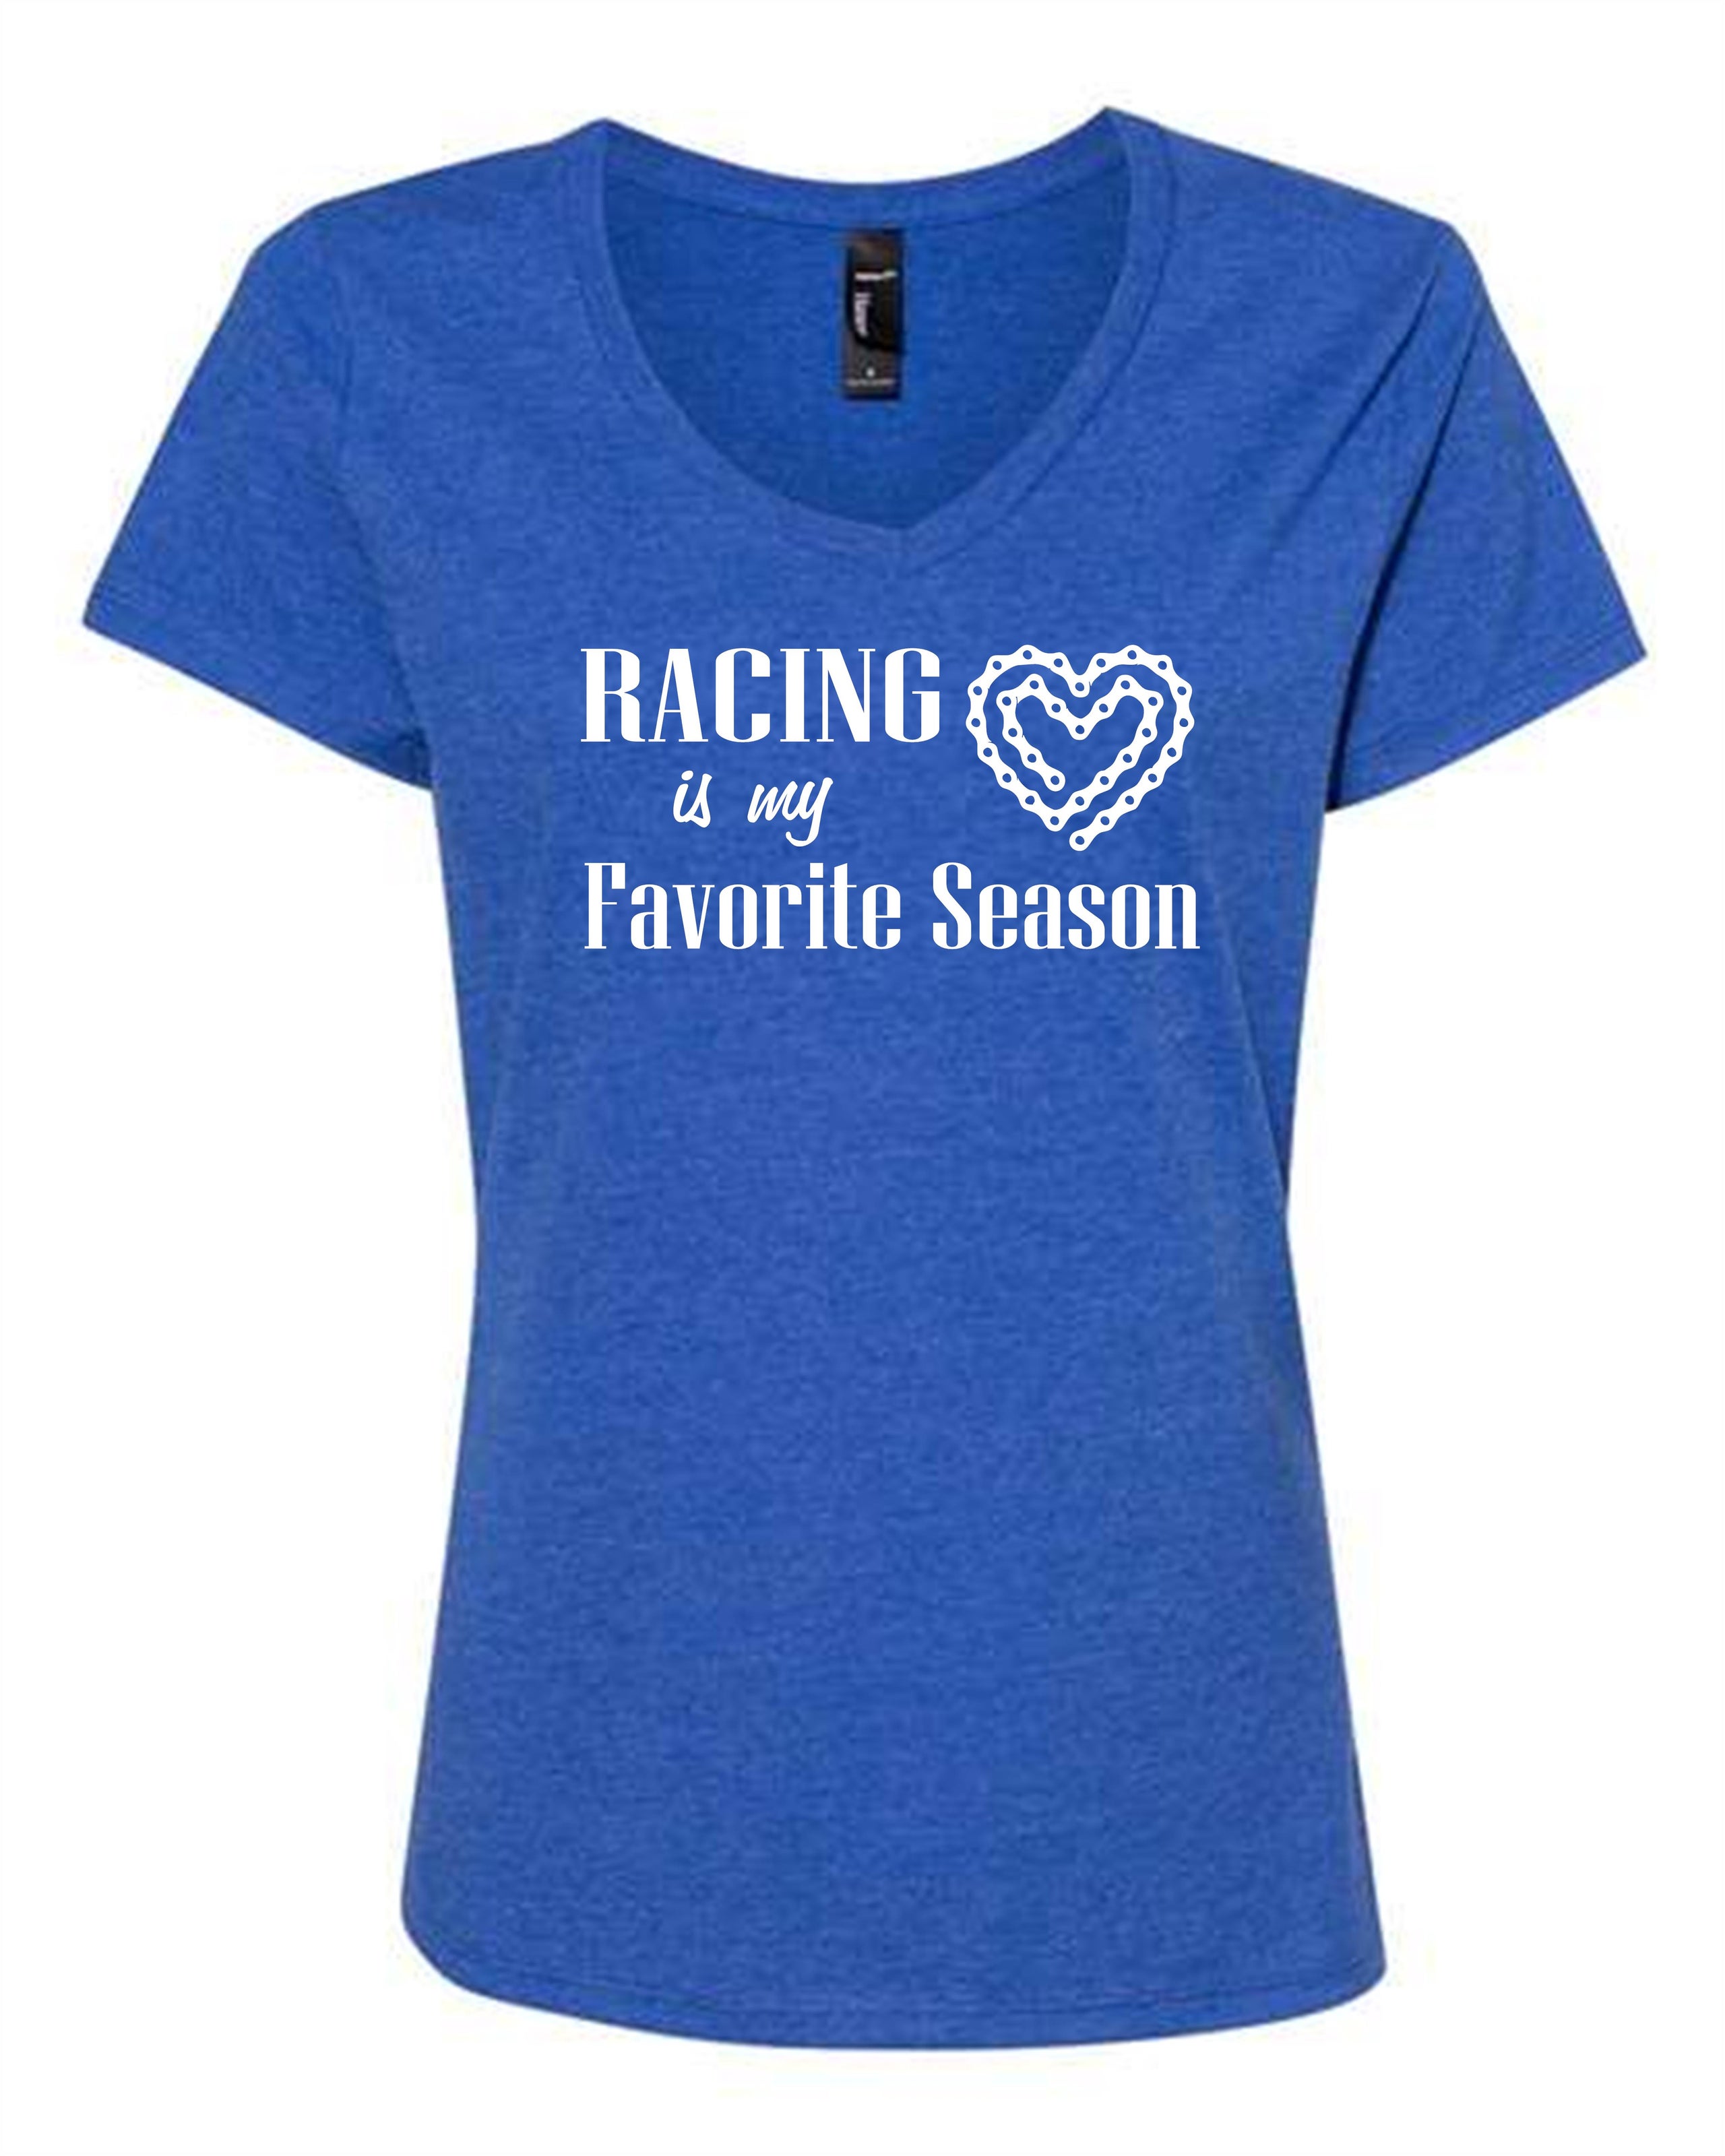 Ladies 'RACING is my Favorite Season' Tee